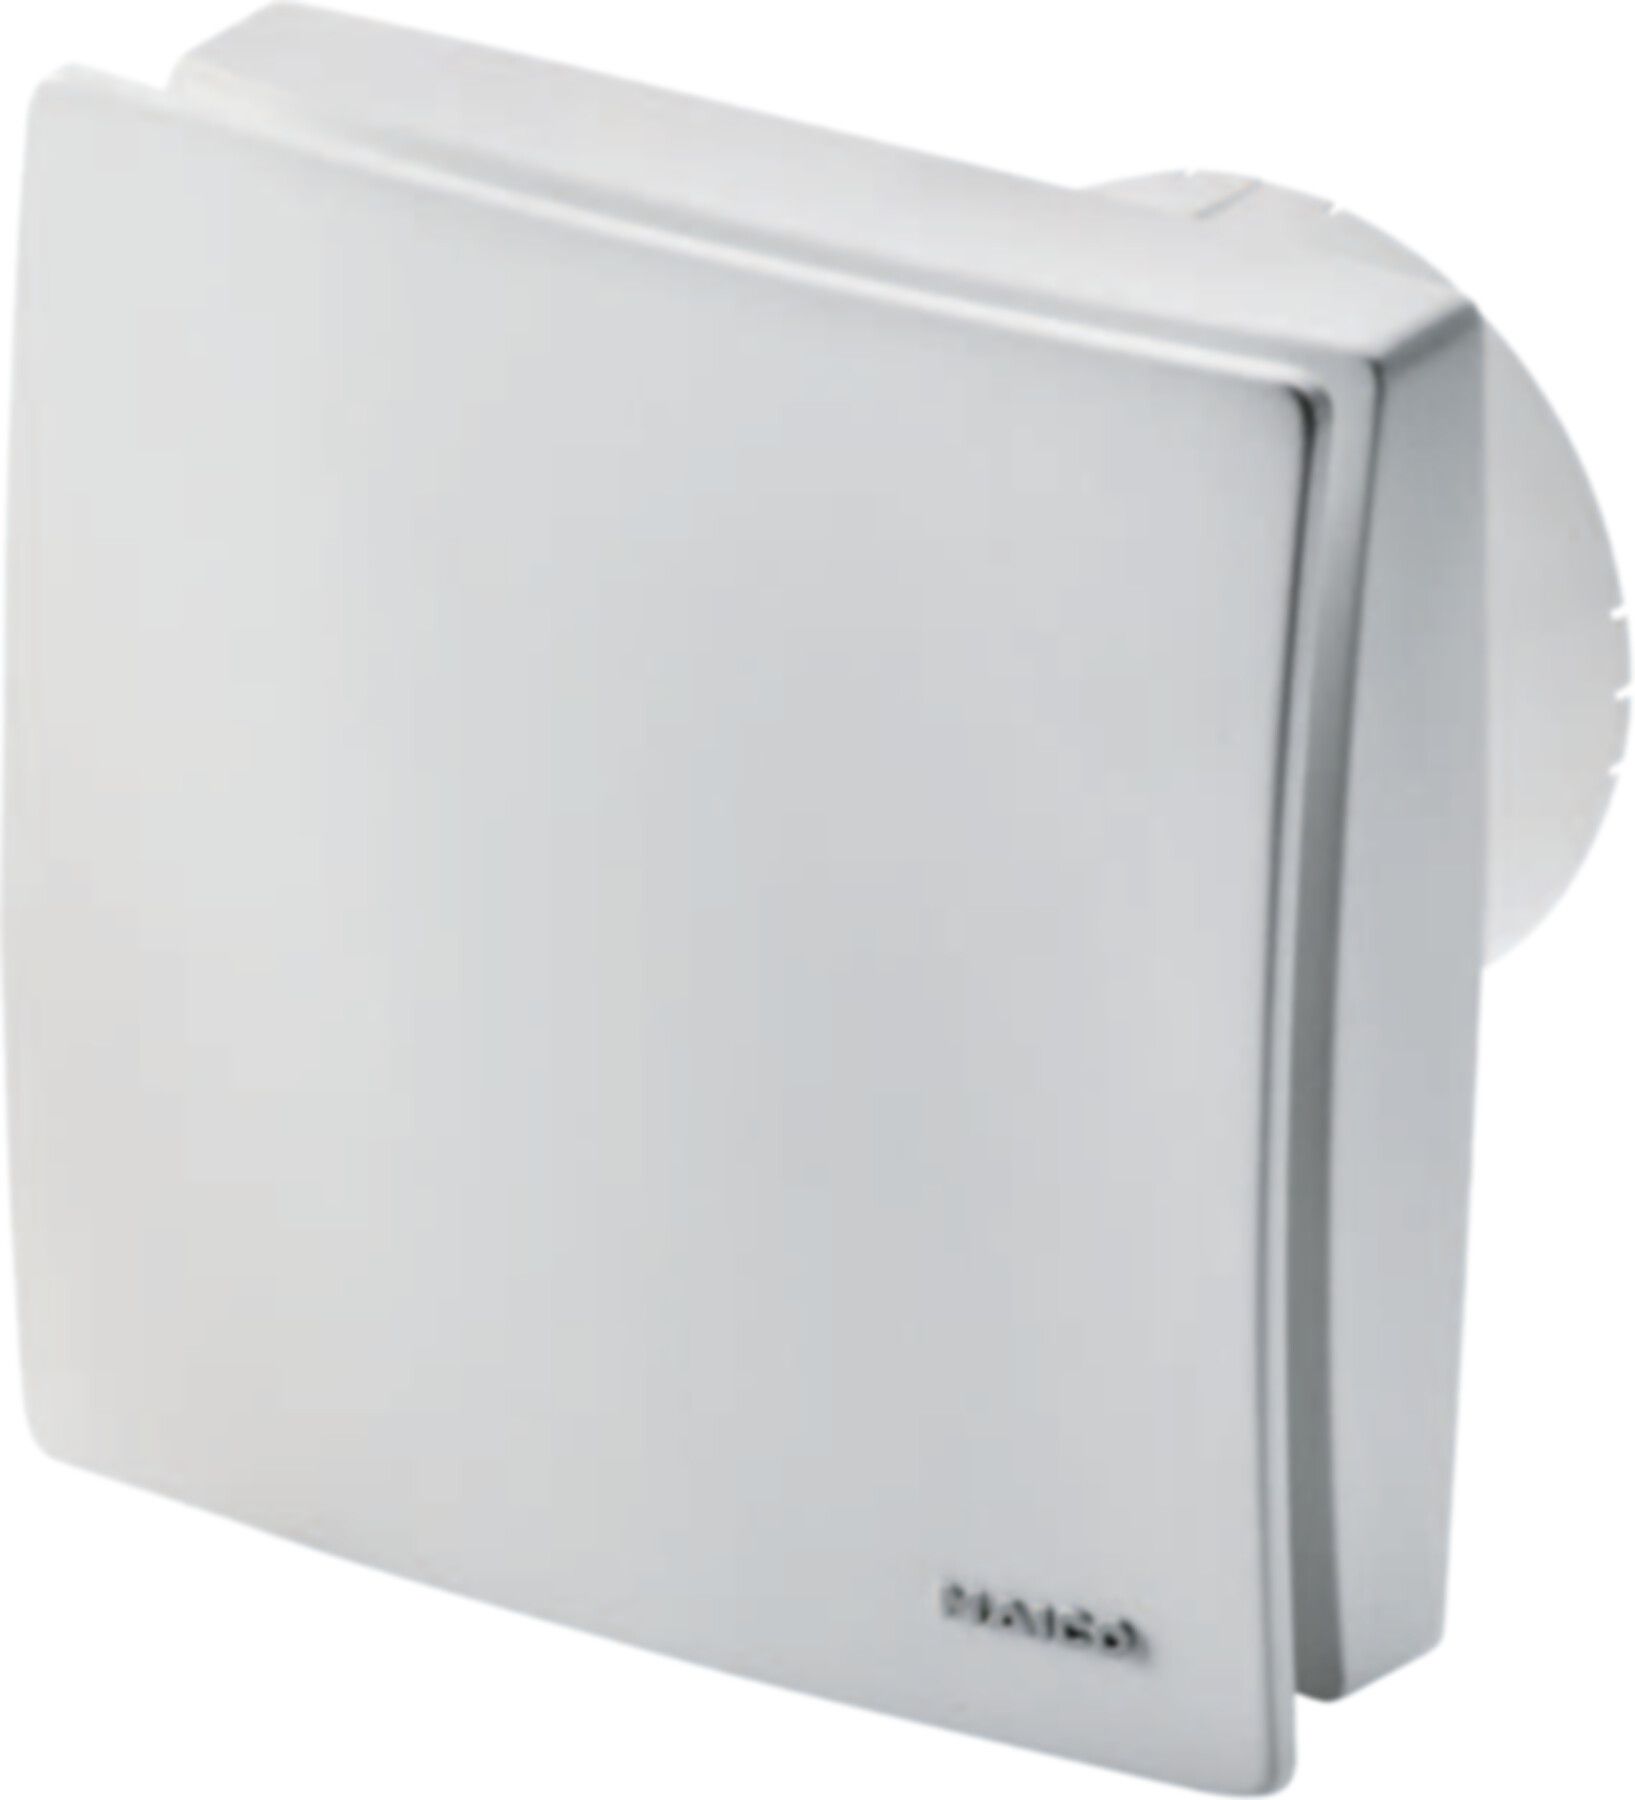 Bad / WC-Ventilatoren COMPETAIR Maico ECA 100 ipro H